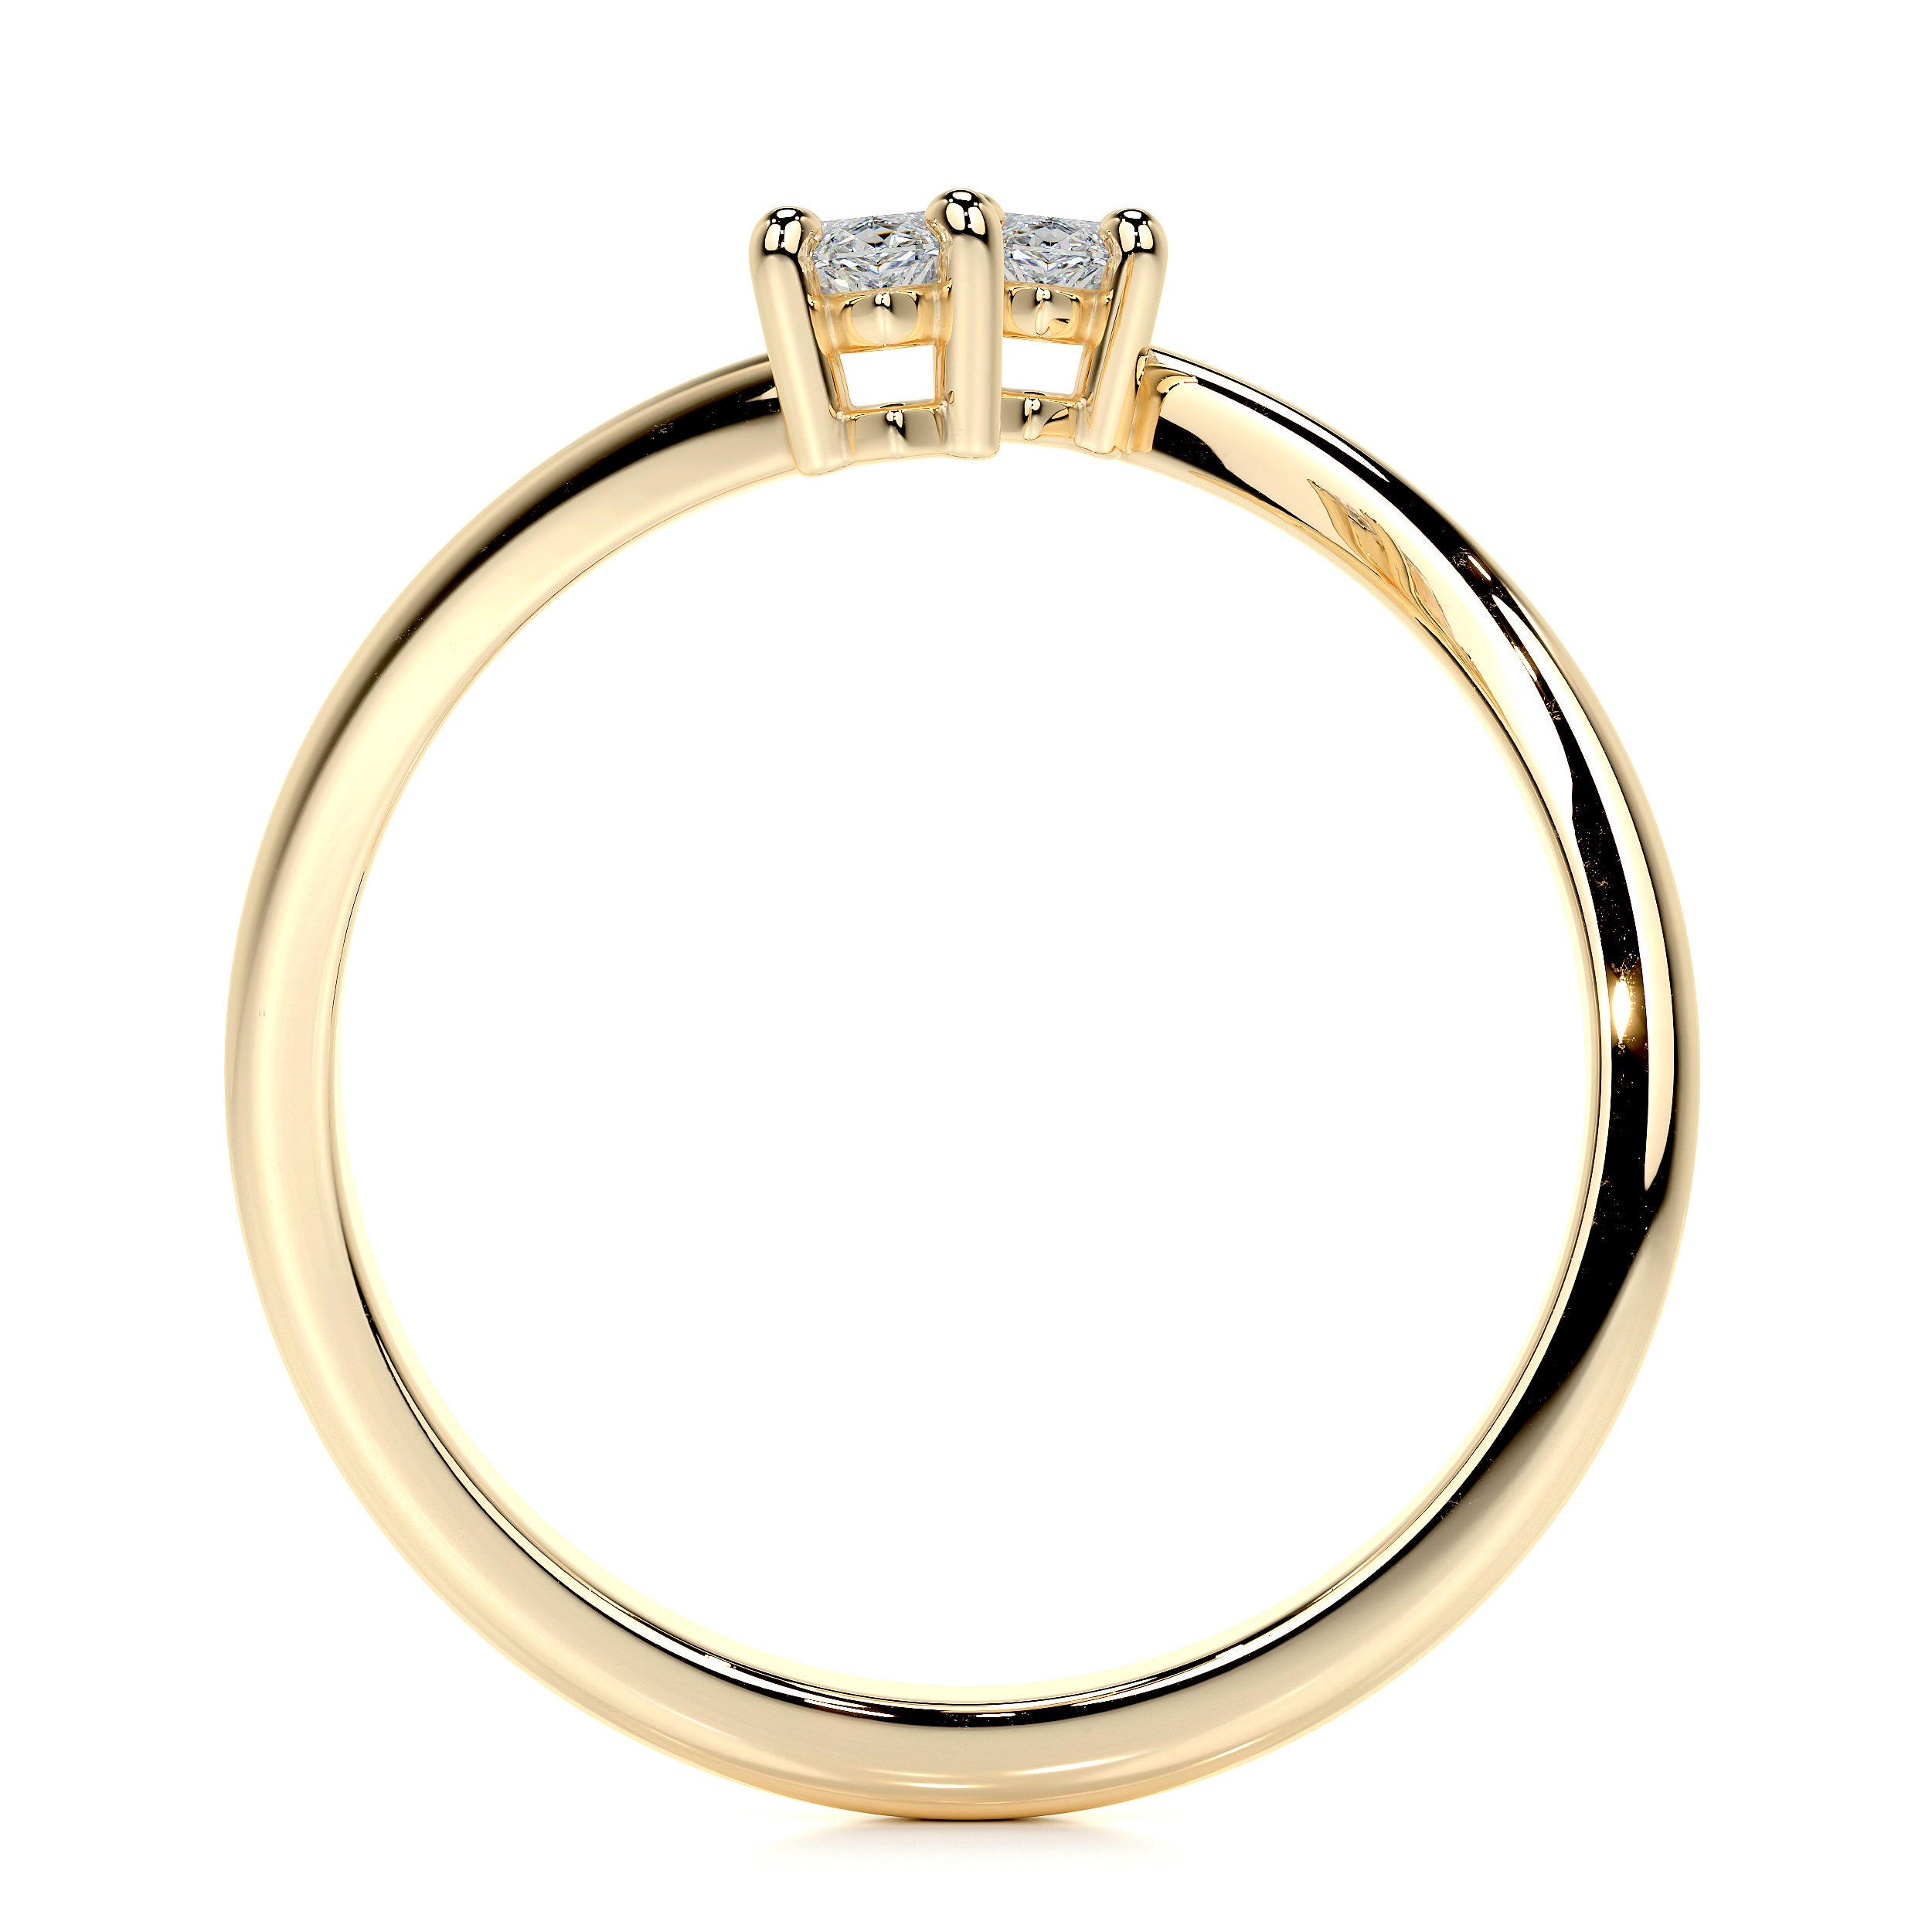 Anita Lab Grown Fashion Ring   (0.36 Carat) -18K Yellow Gold